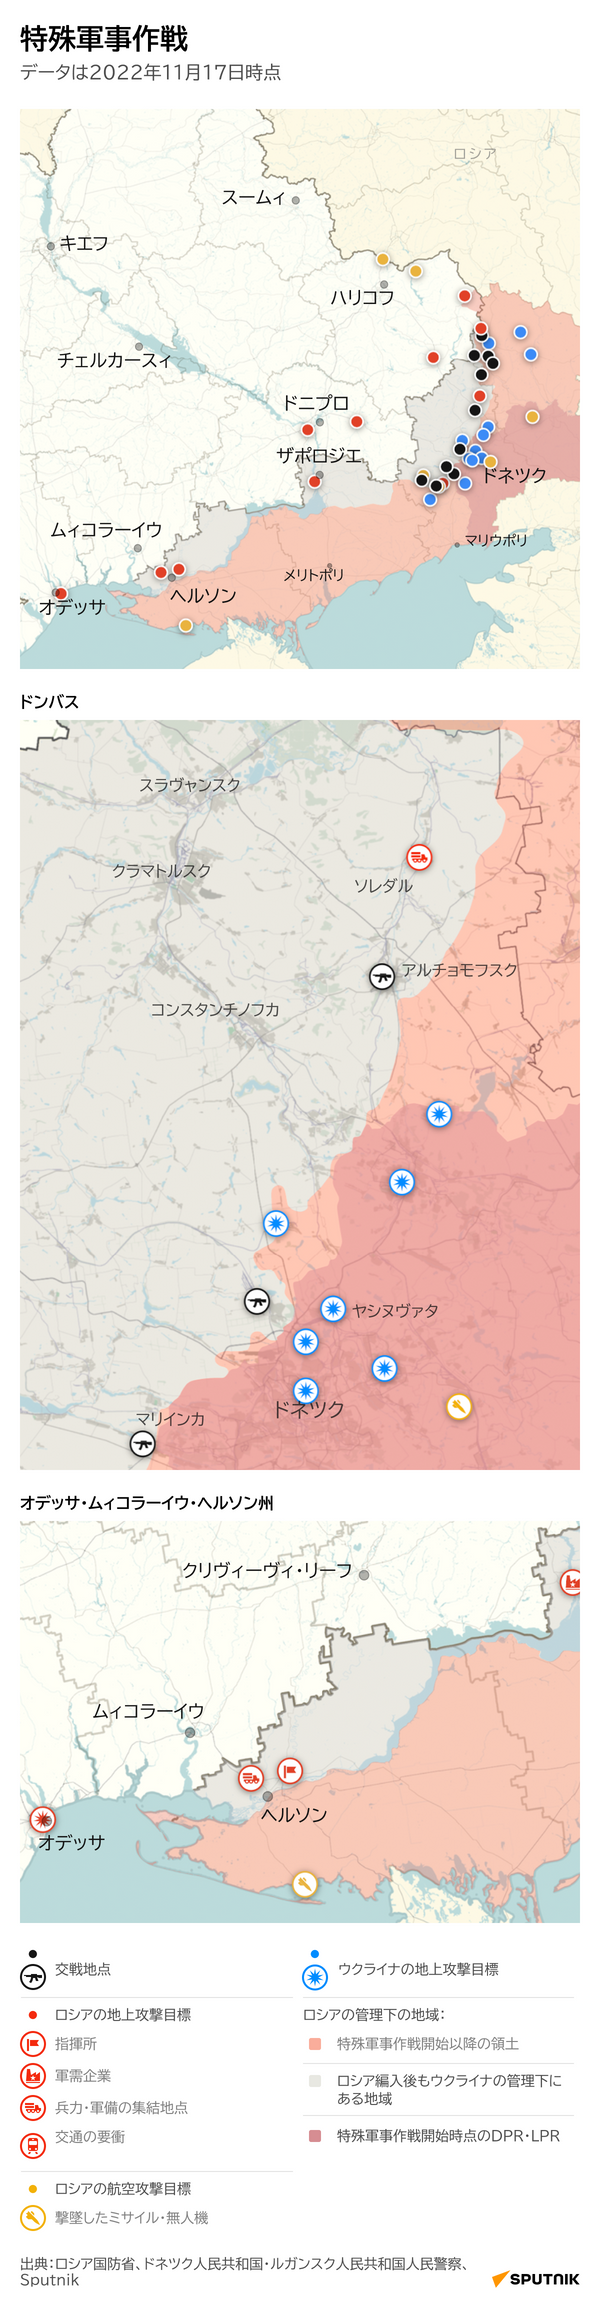 ウクライナにおけるロシア特殊軍事作戦の経過と成果 - Sputnik 日本